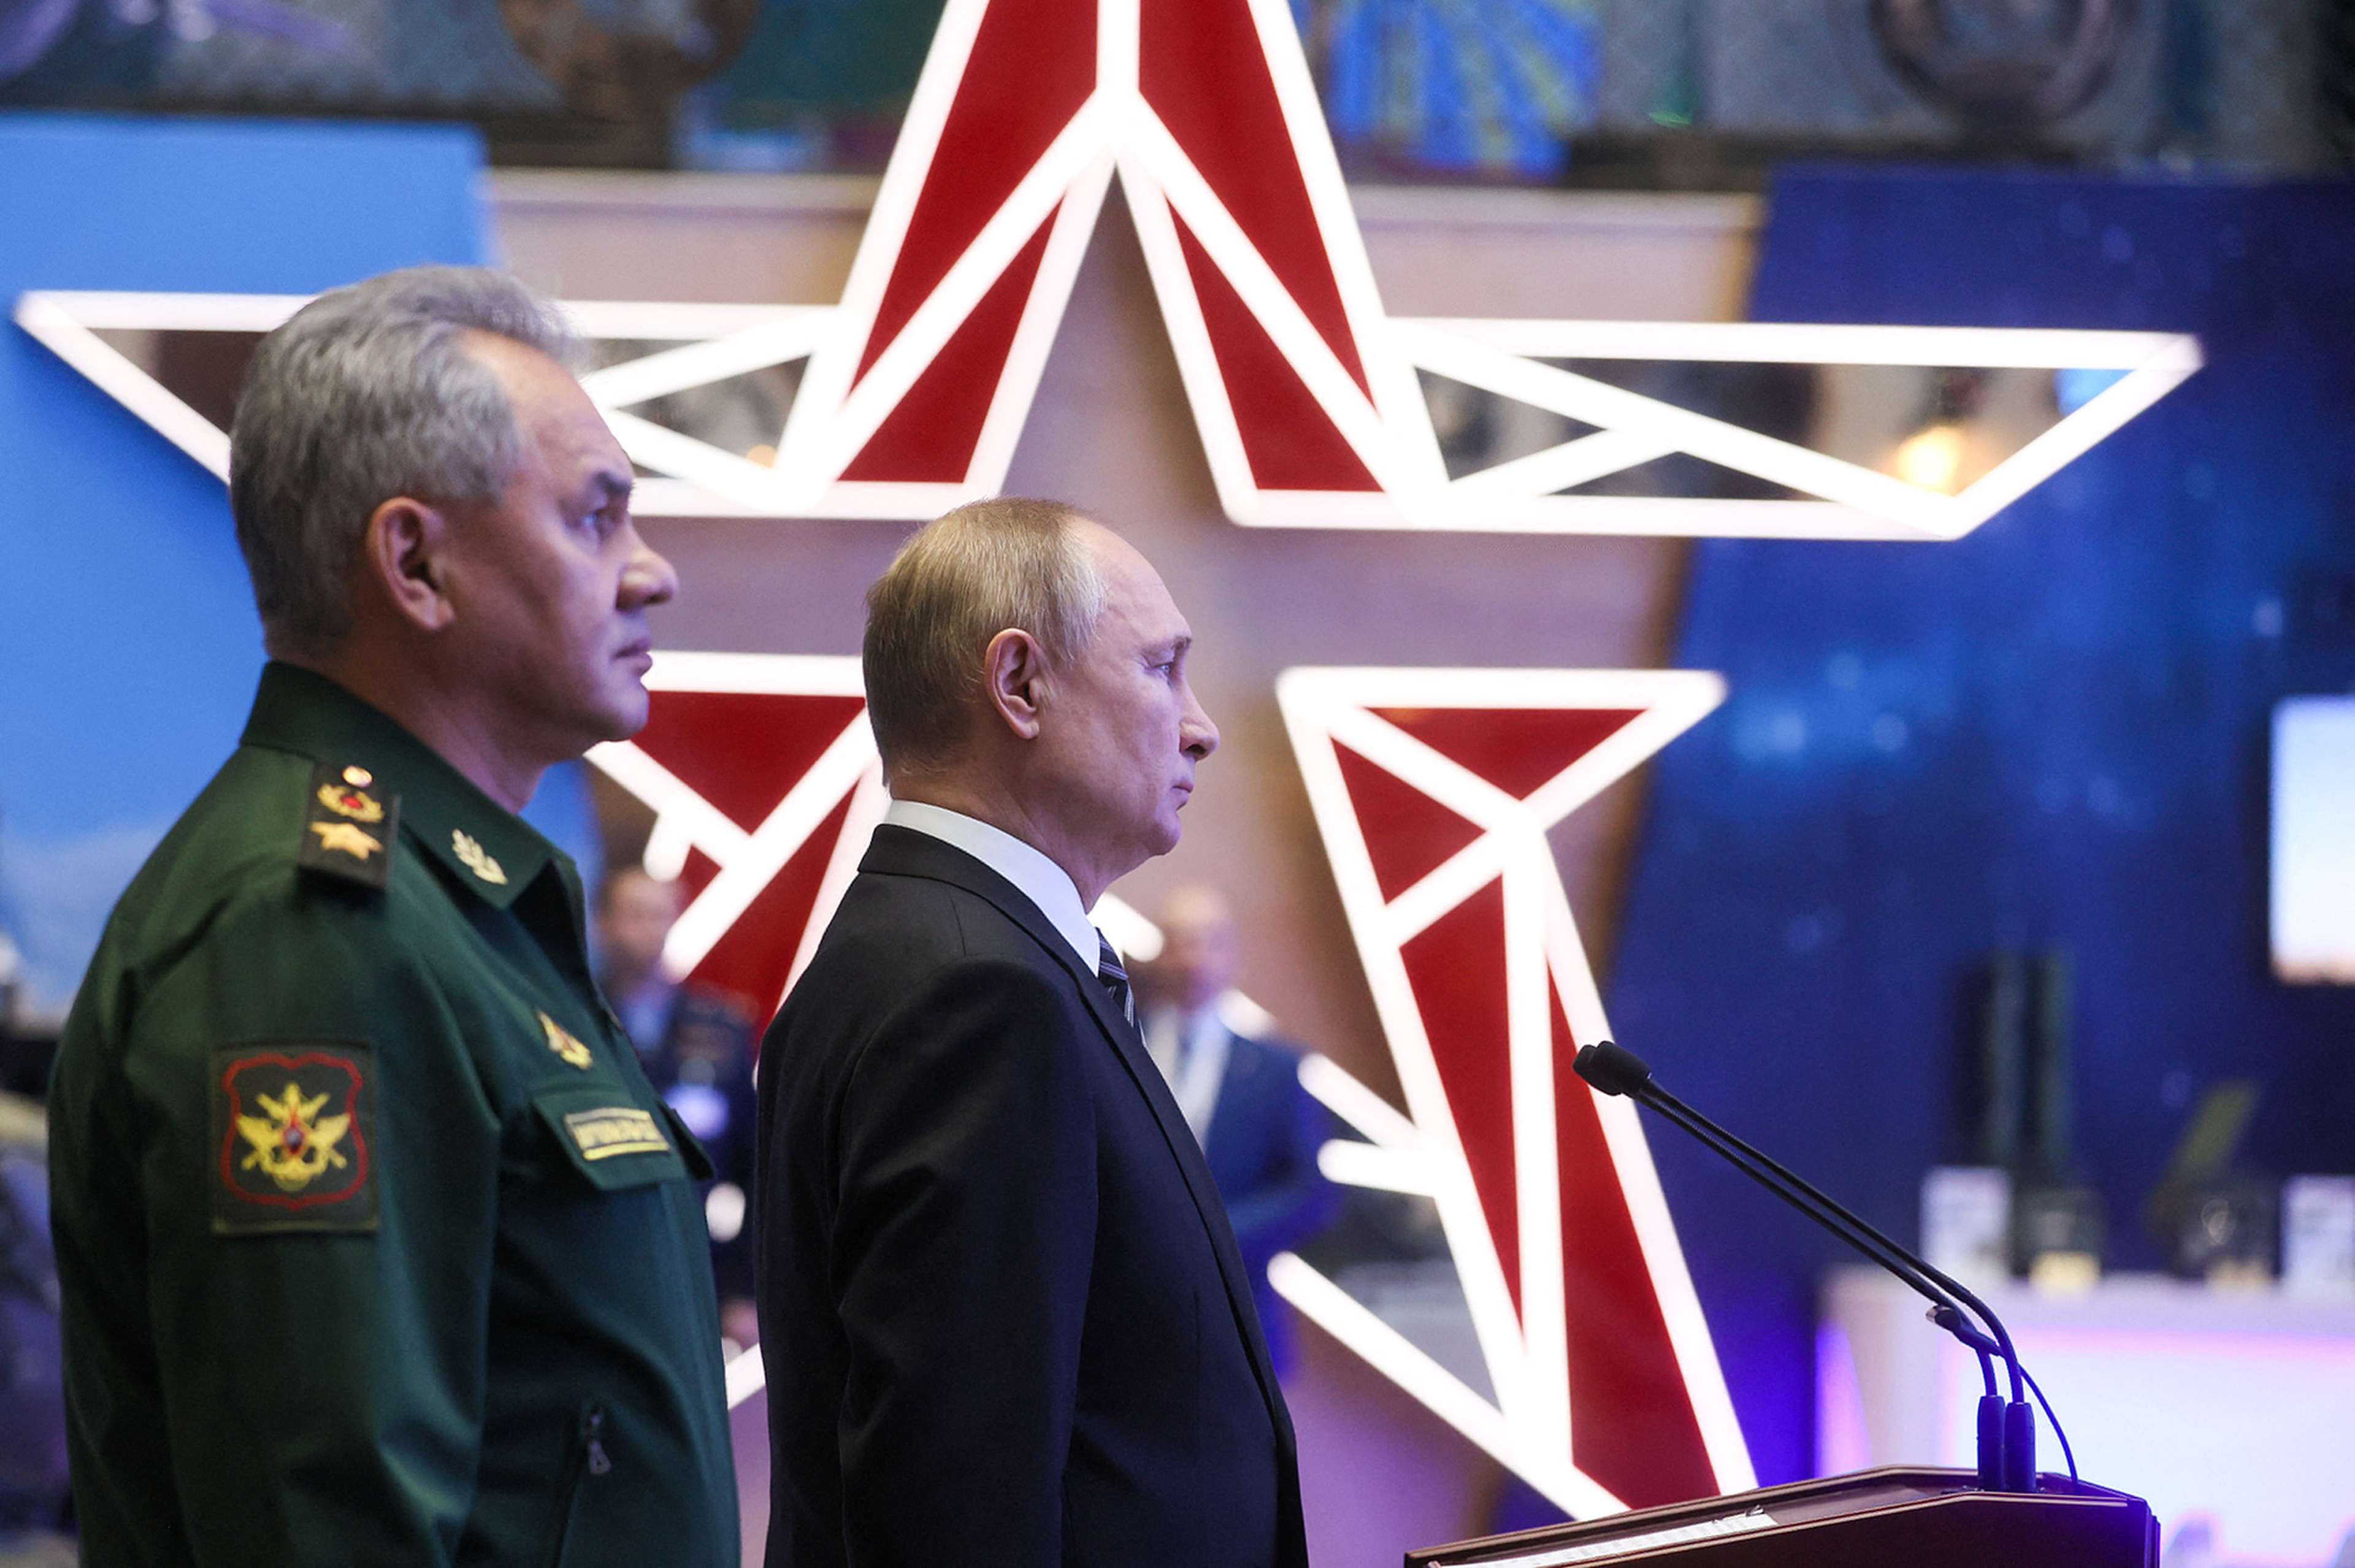 /assets/images/upload/Poutine-promet-une-reponse-militaire-et-technique-en-cas-de-menaces-occidentales.jpg